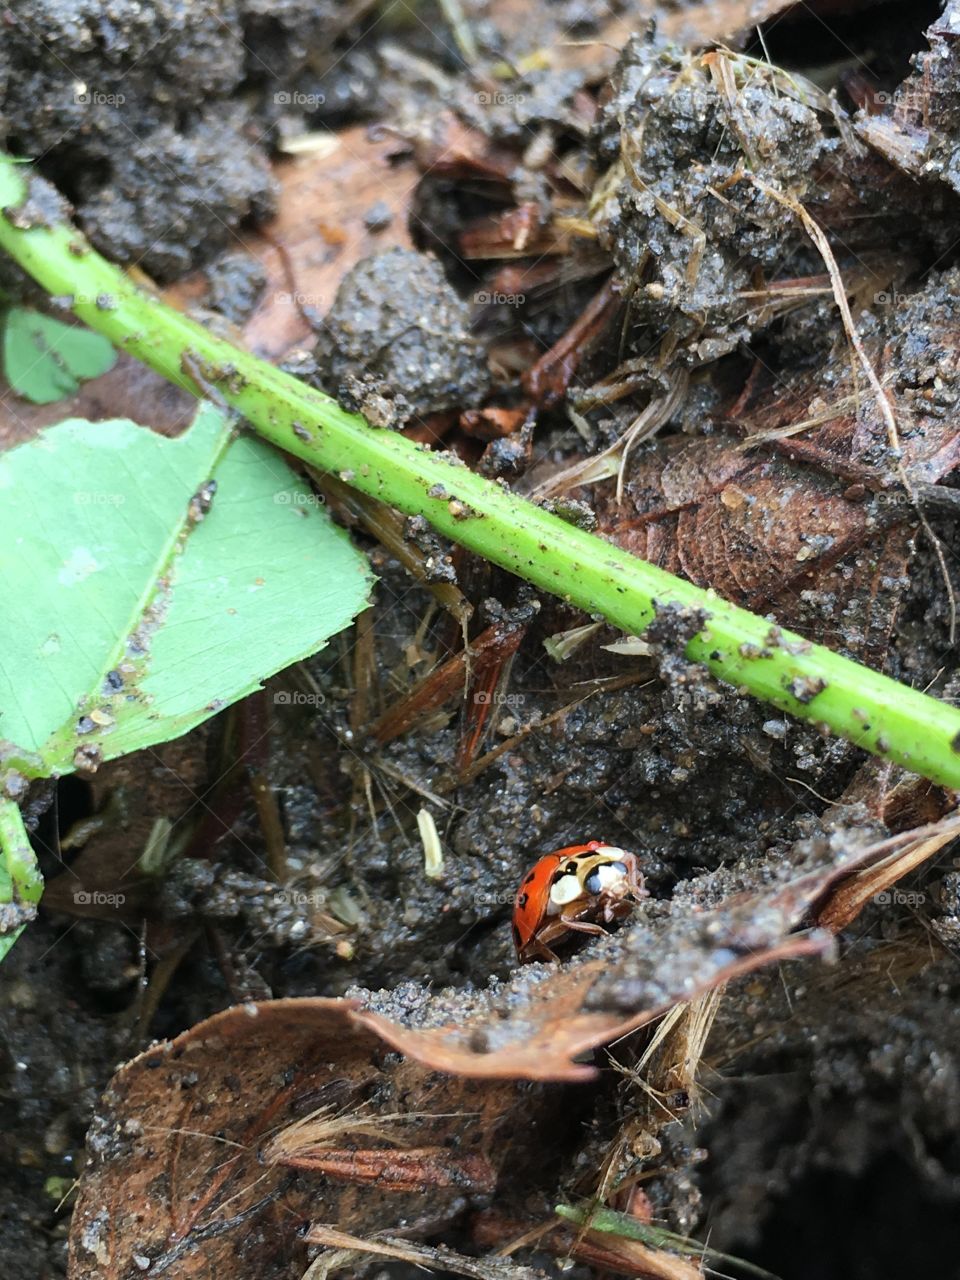 Ladybug emerging